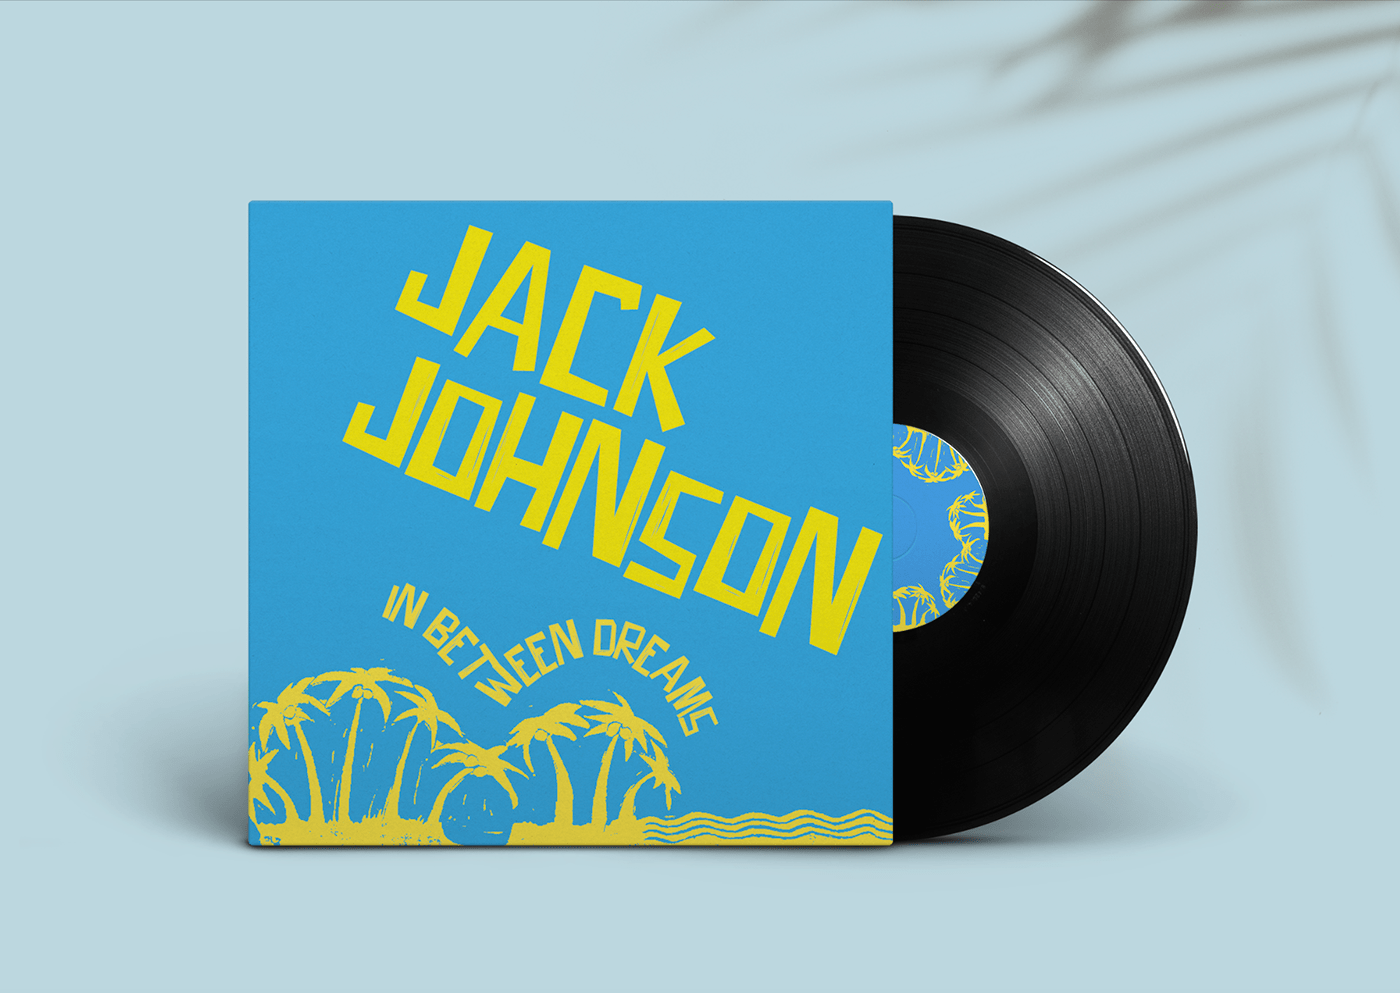 coverdesign graphicdesign JackJohnson linocut musiccover vinyl